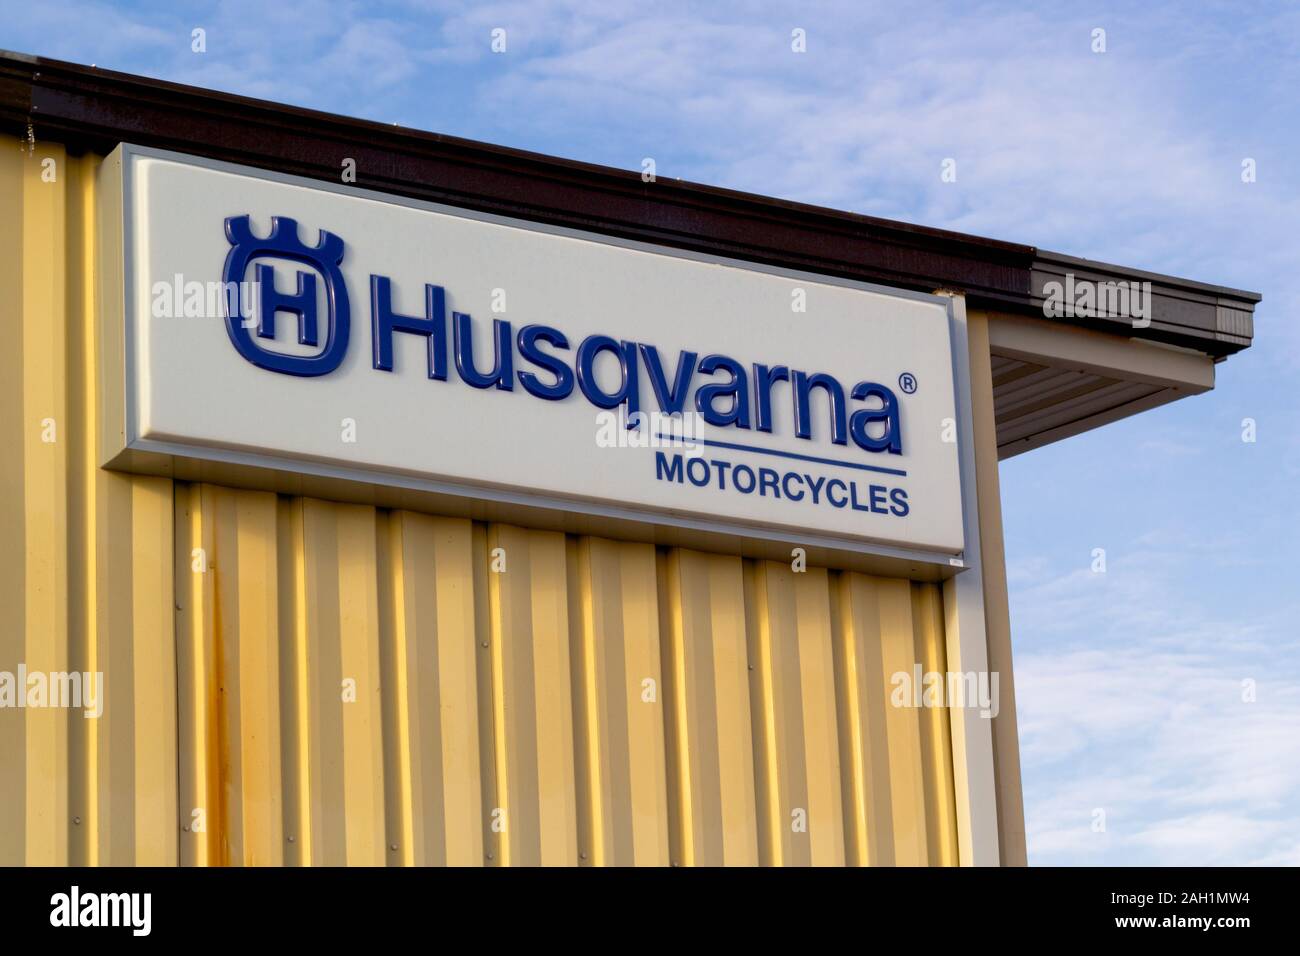 Truro, Canada - le 22 décembre 2019 : Husqvarna Motorcycles signe. Husqvarna est une marque suédoise de plusieurs sociétés d'exploitation. Banque D'Images